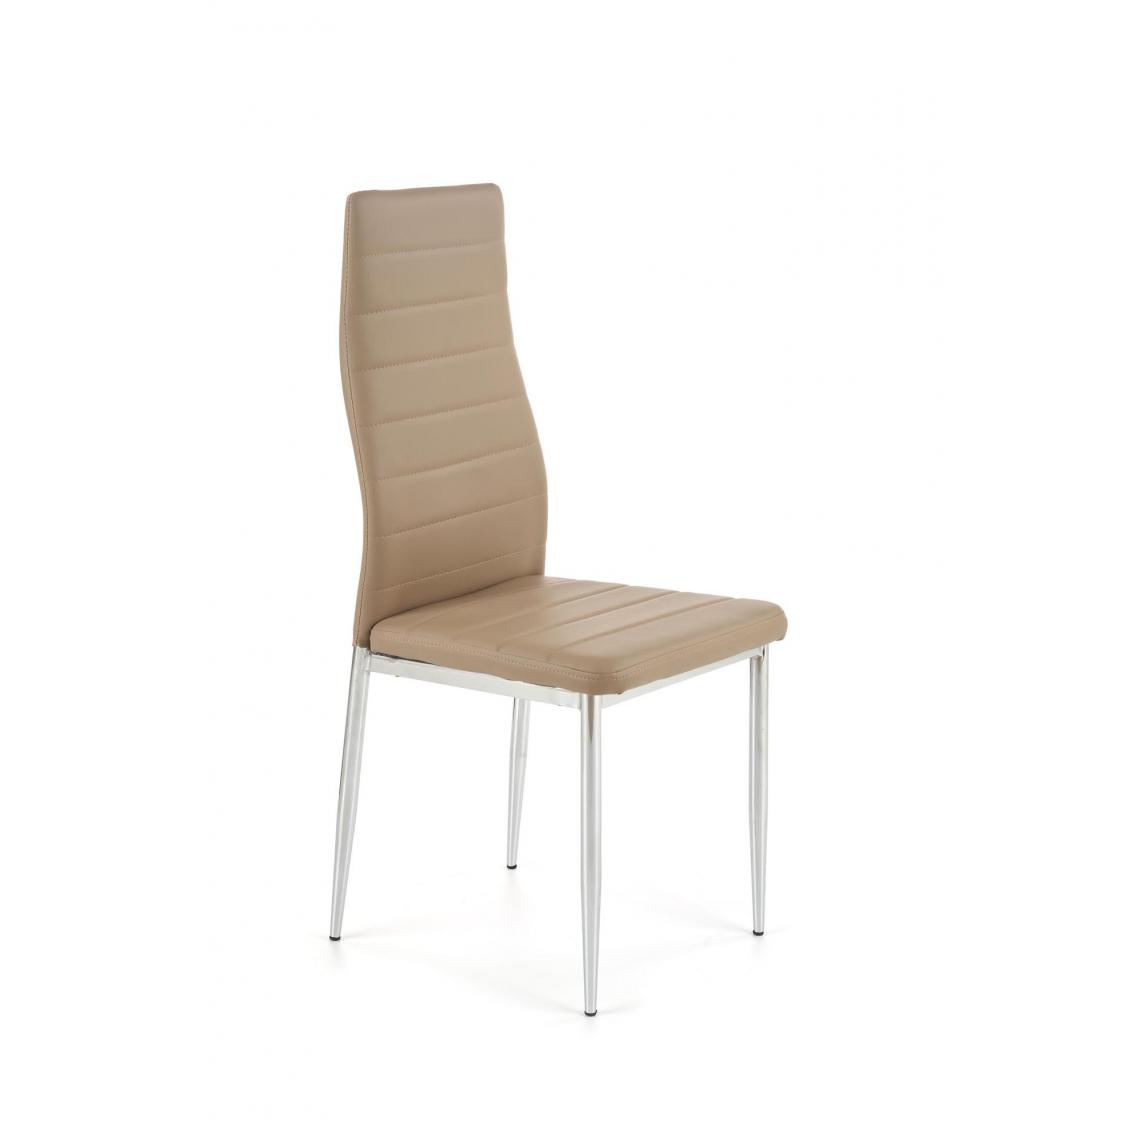 Hucoco - FILIPPO - Chaise rembourrée style moderne salon/chambre - 97x49x40 - Base chromée - Meuble de salle à manger - Beige - Chaises